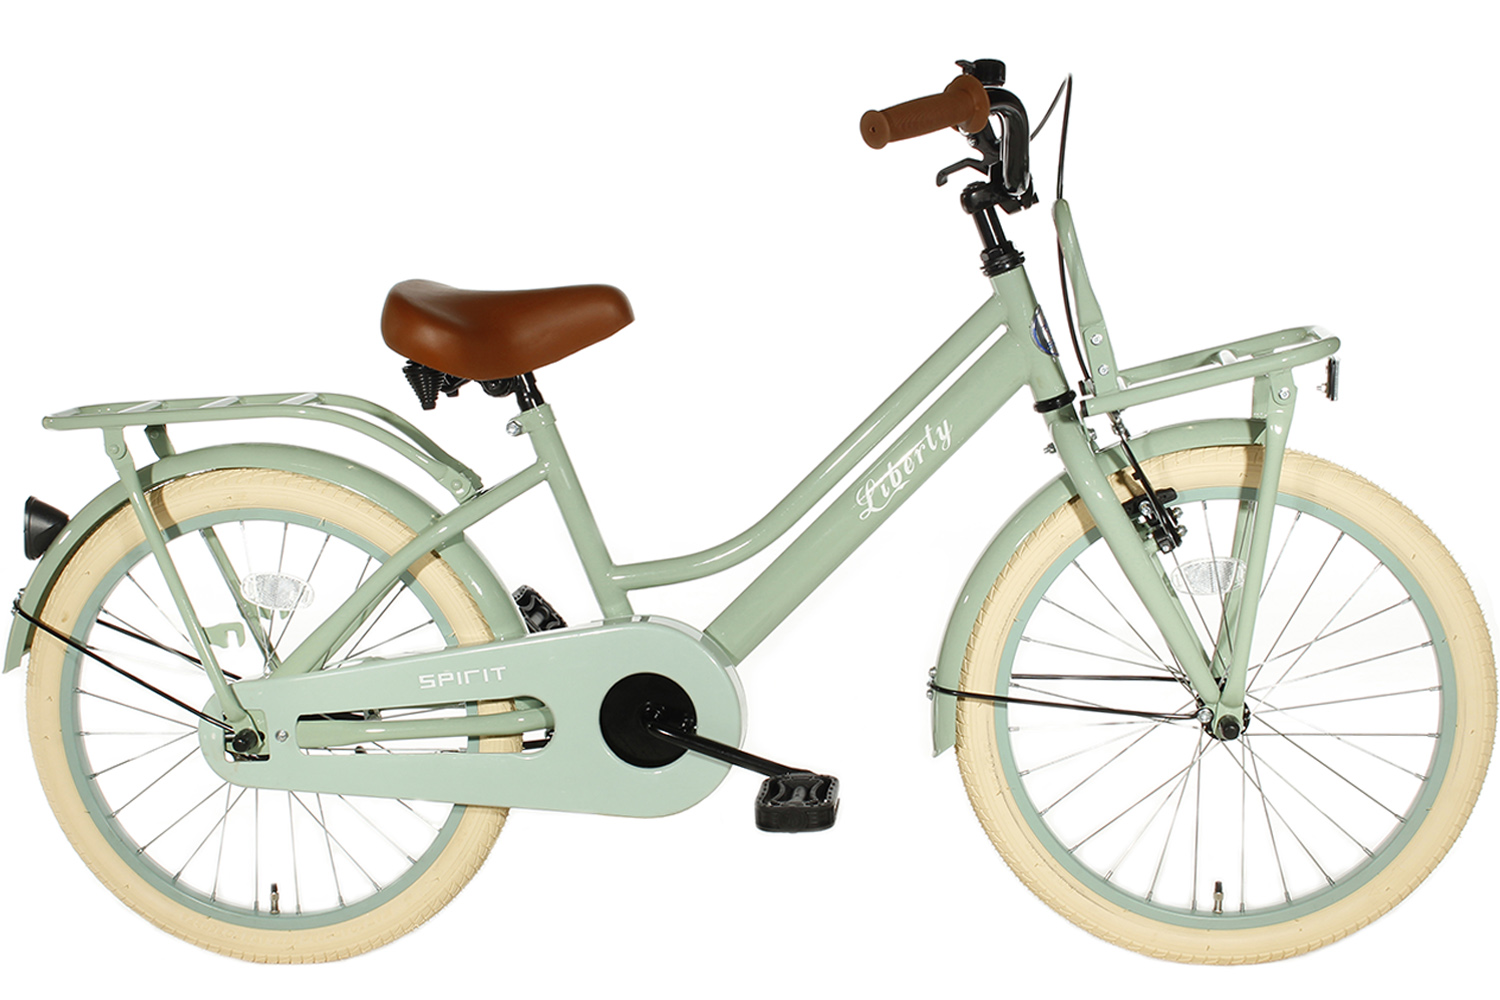 Geslaagd lengte verkopen Spirit Liberty Meisjesfiets Groen 22 Inch | City-Bikes.nl